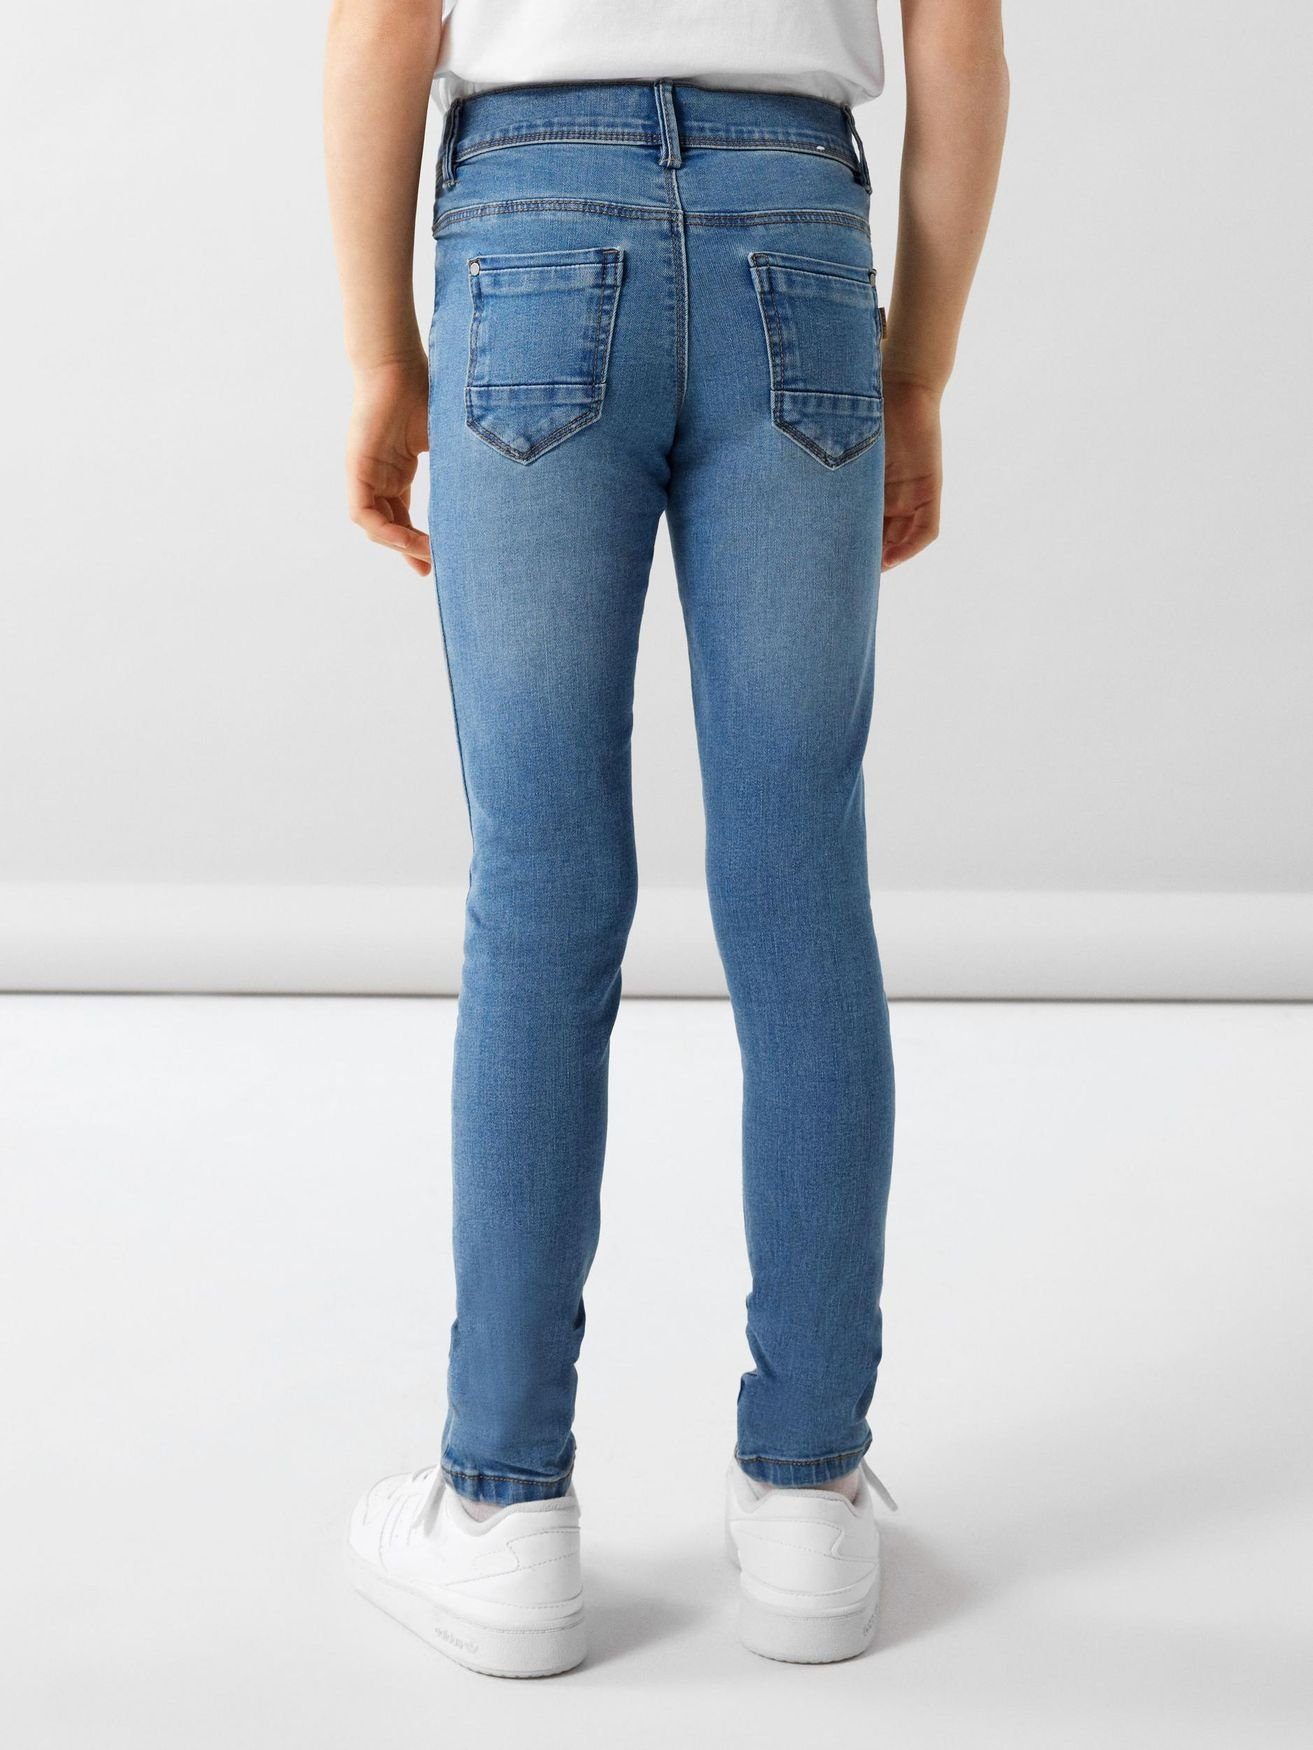 Skinny Hose in Regular-fit-Jeans Jeans Hellblau It NKFPOLLY Name 5546 Denim